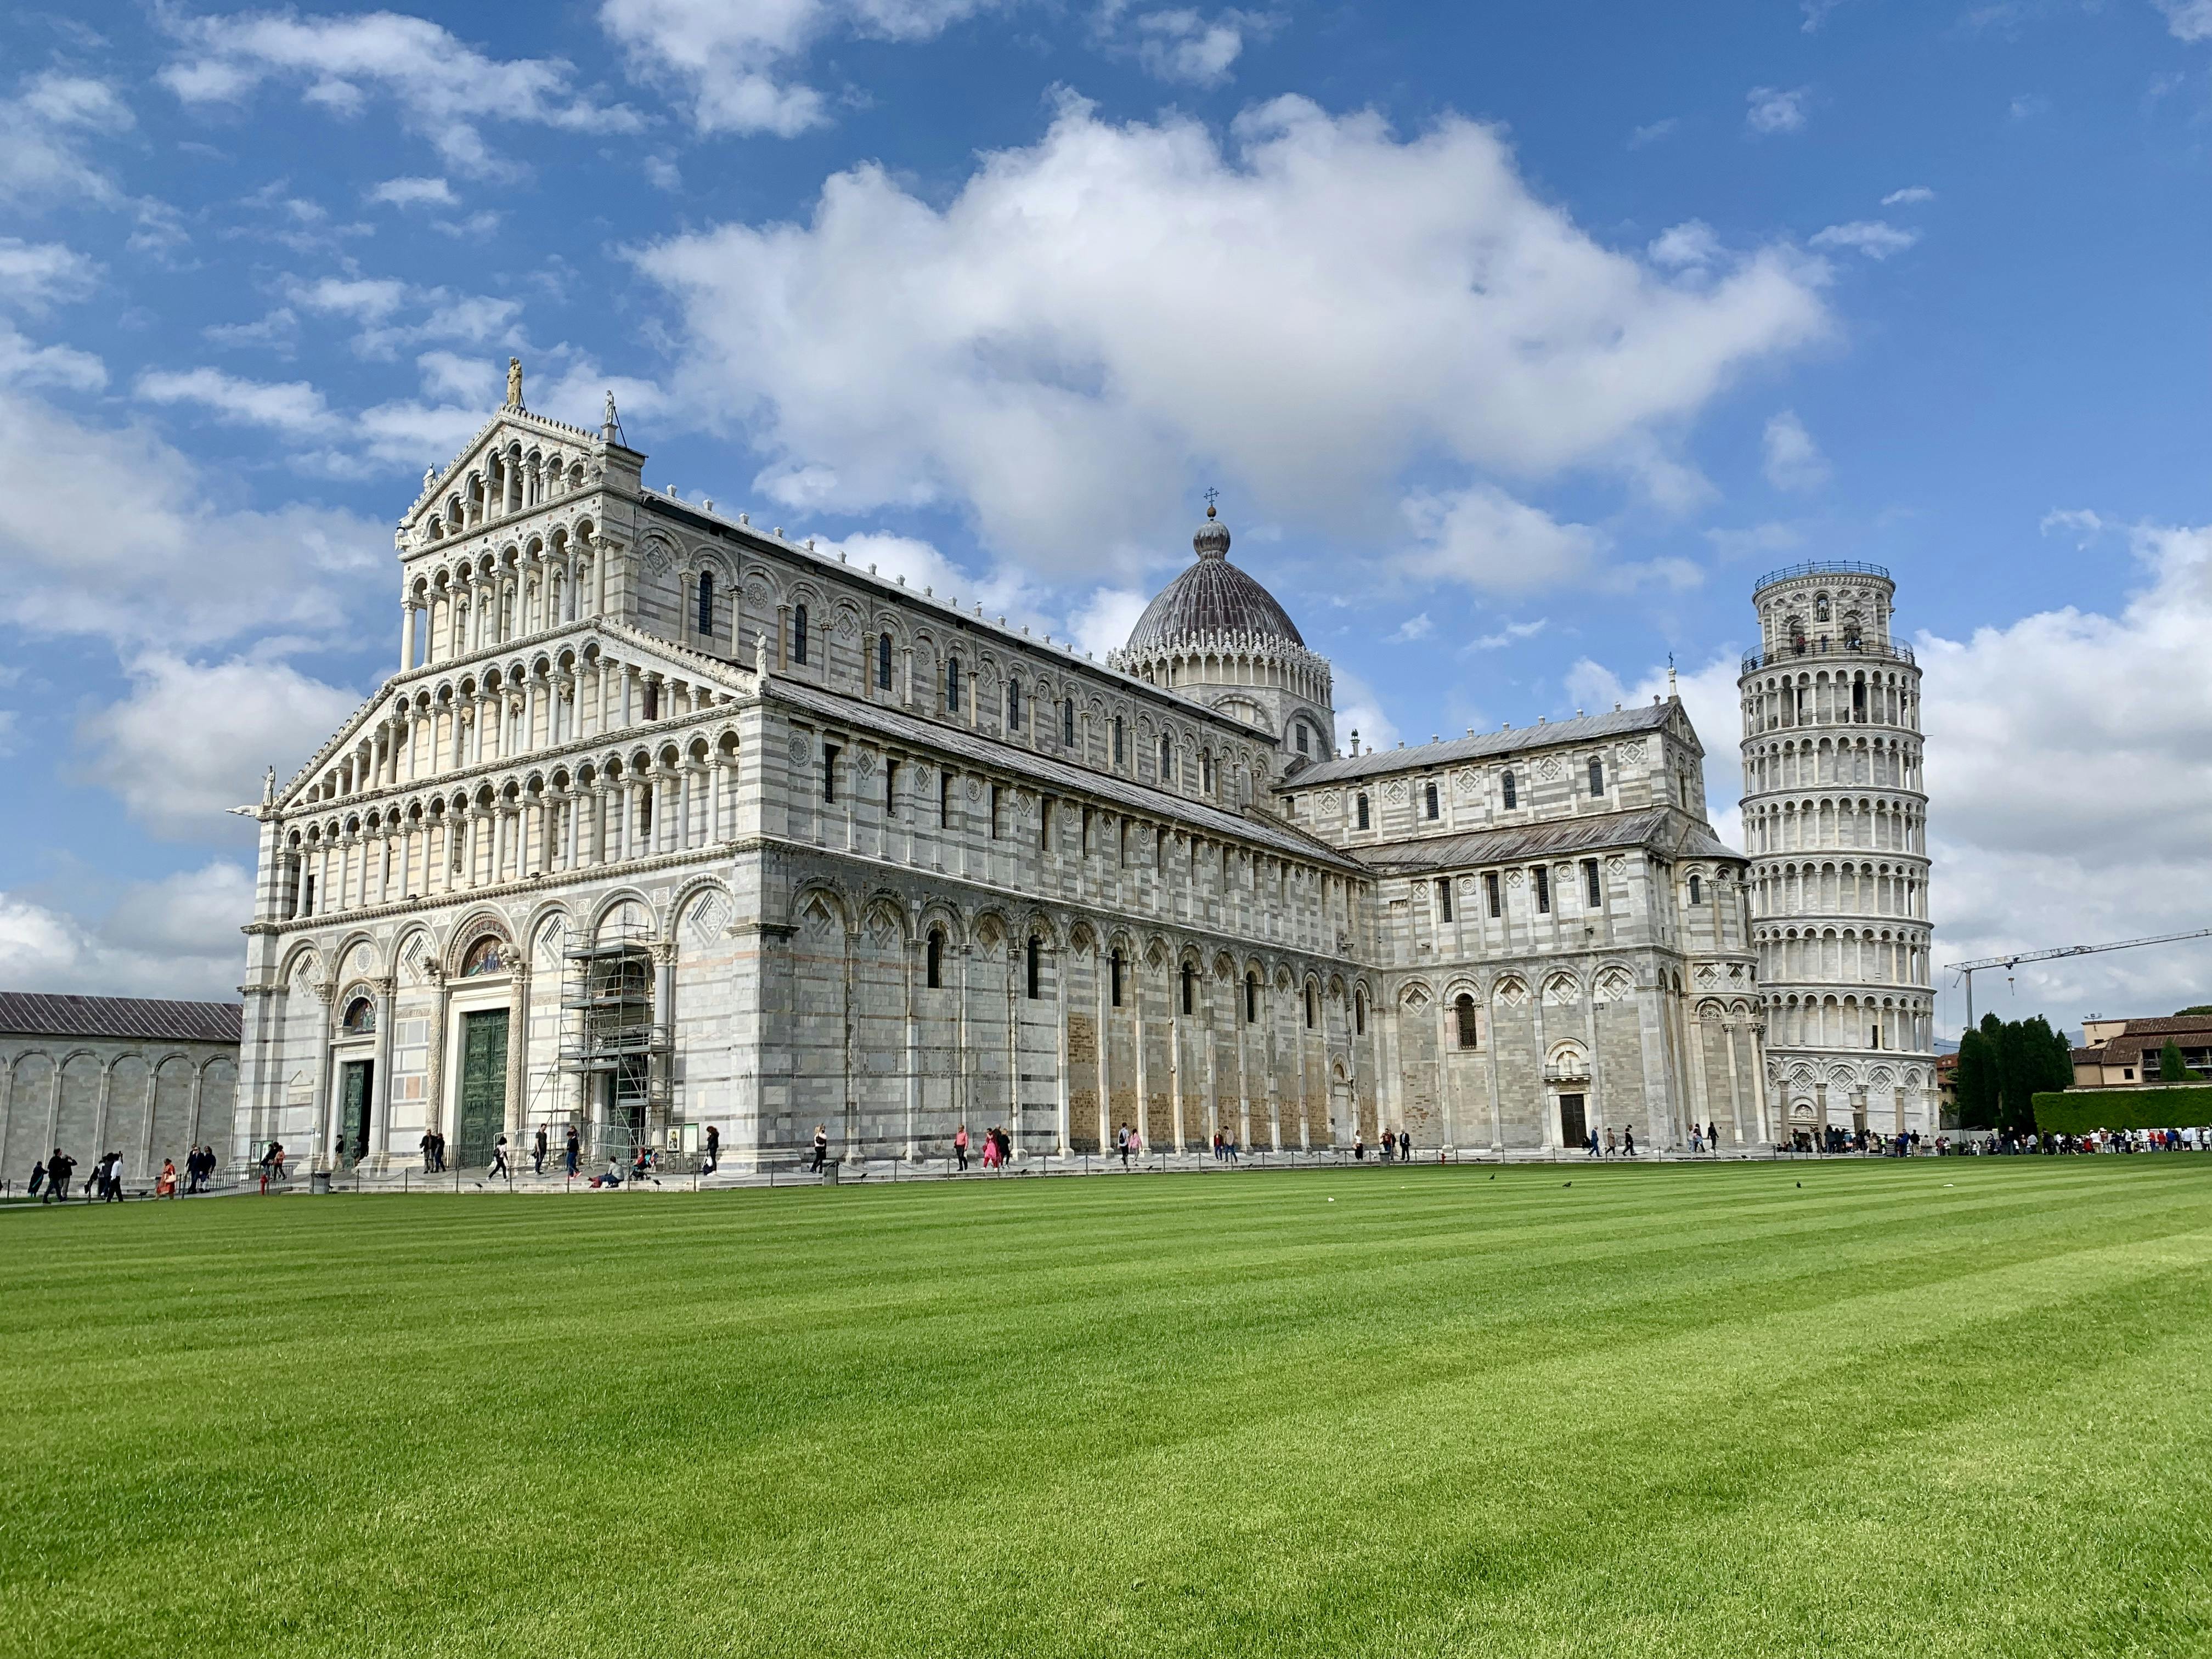 Excursión guiada privada a Pisa y la Torre Inclinada.